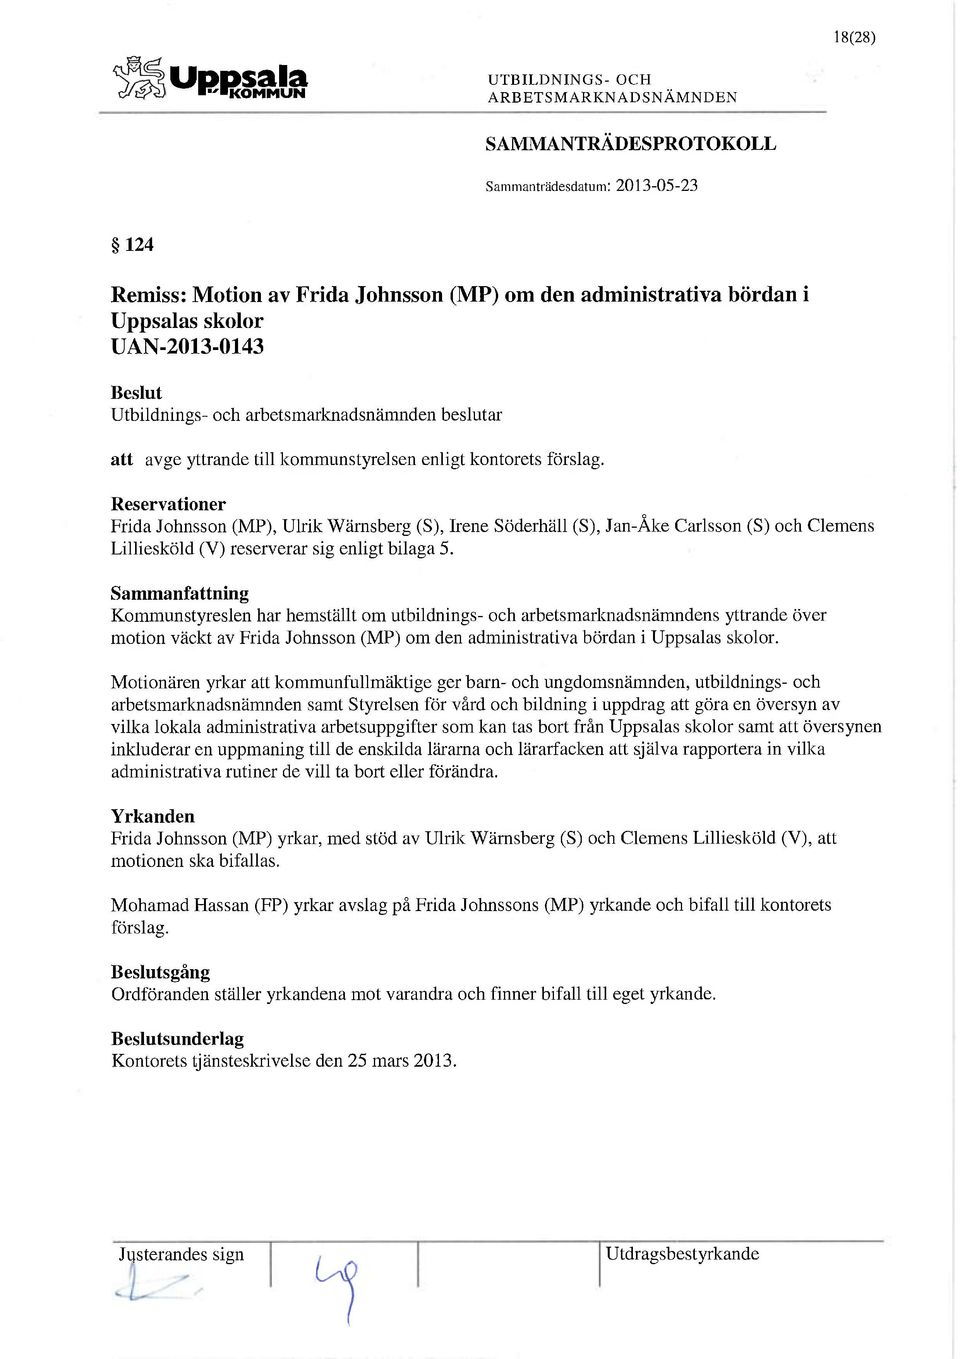 Kommunstyreslen har hemställt om utbildnings- och arbetsmarlaiadsnämndens yttrande över motion väckt av Frida Johnsson (MP) om den administrativa bördan i Uppsalas skolor.